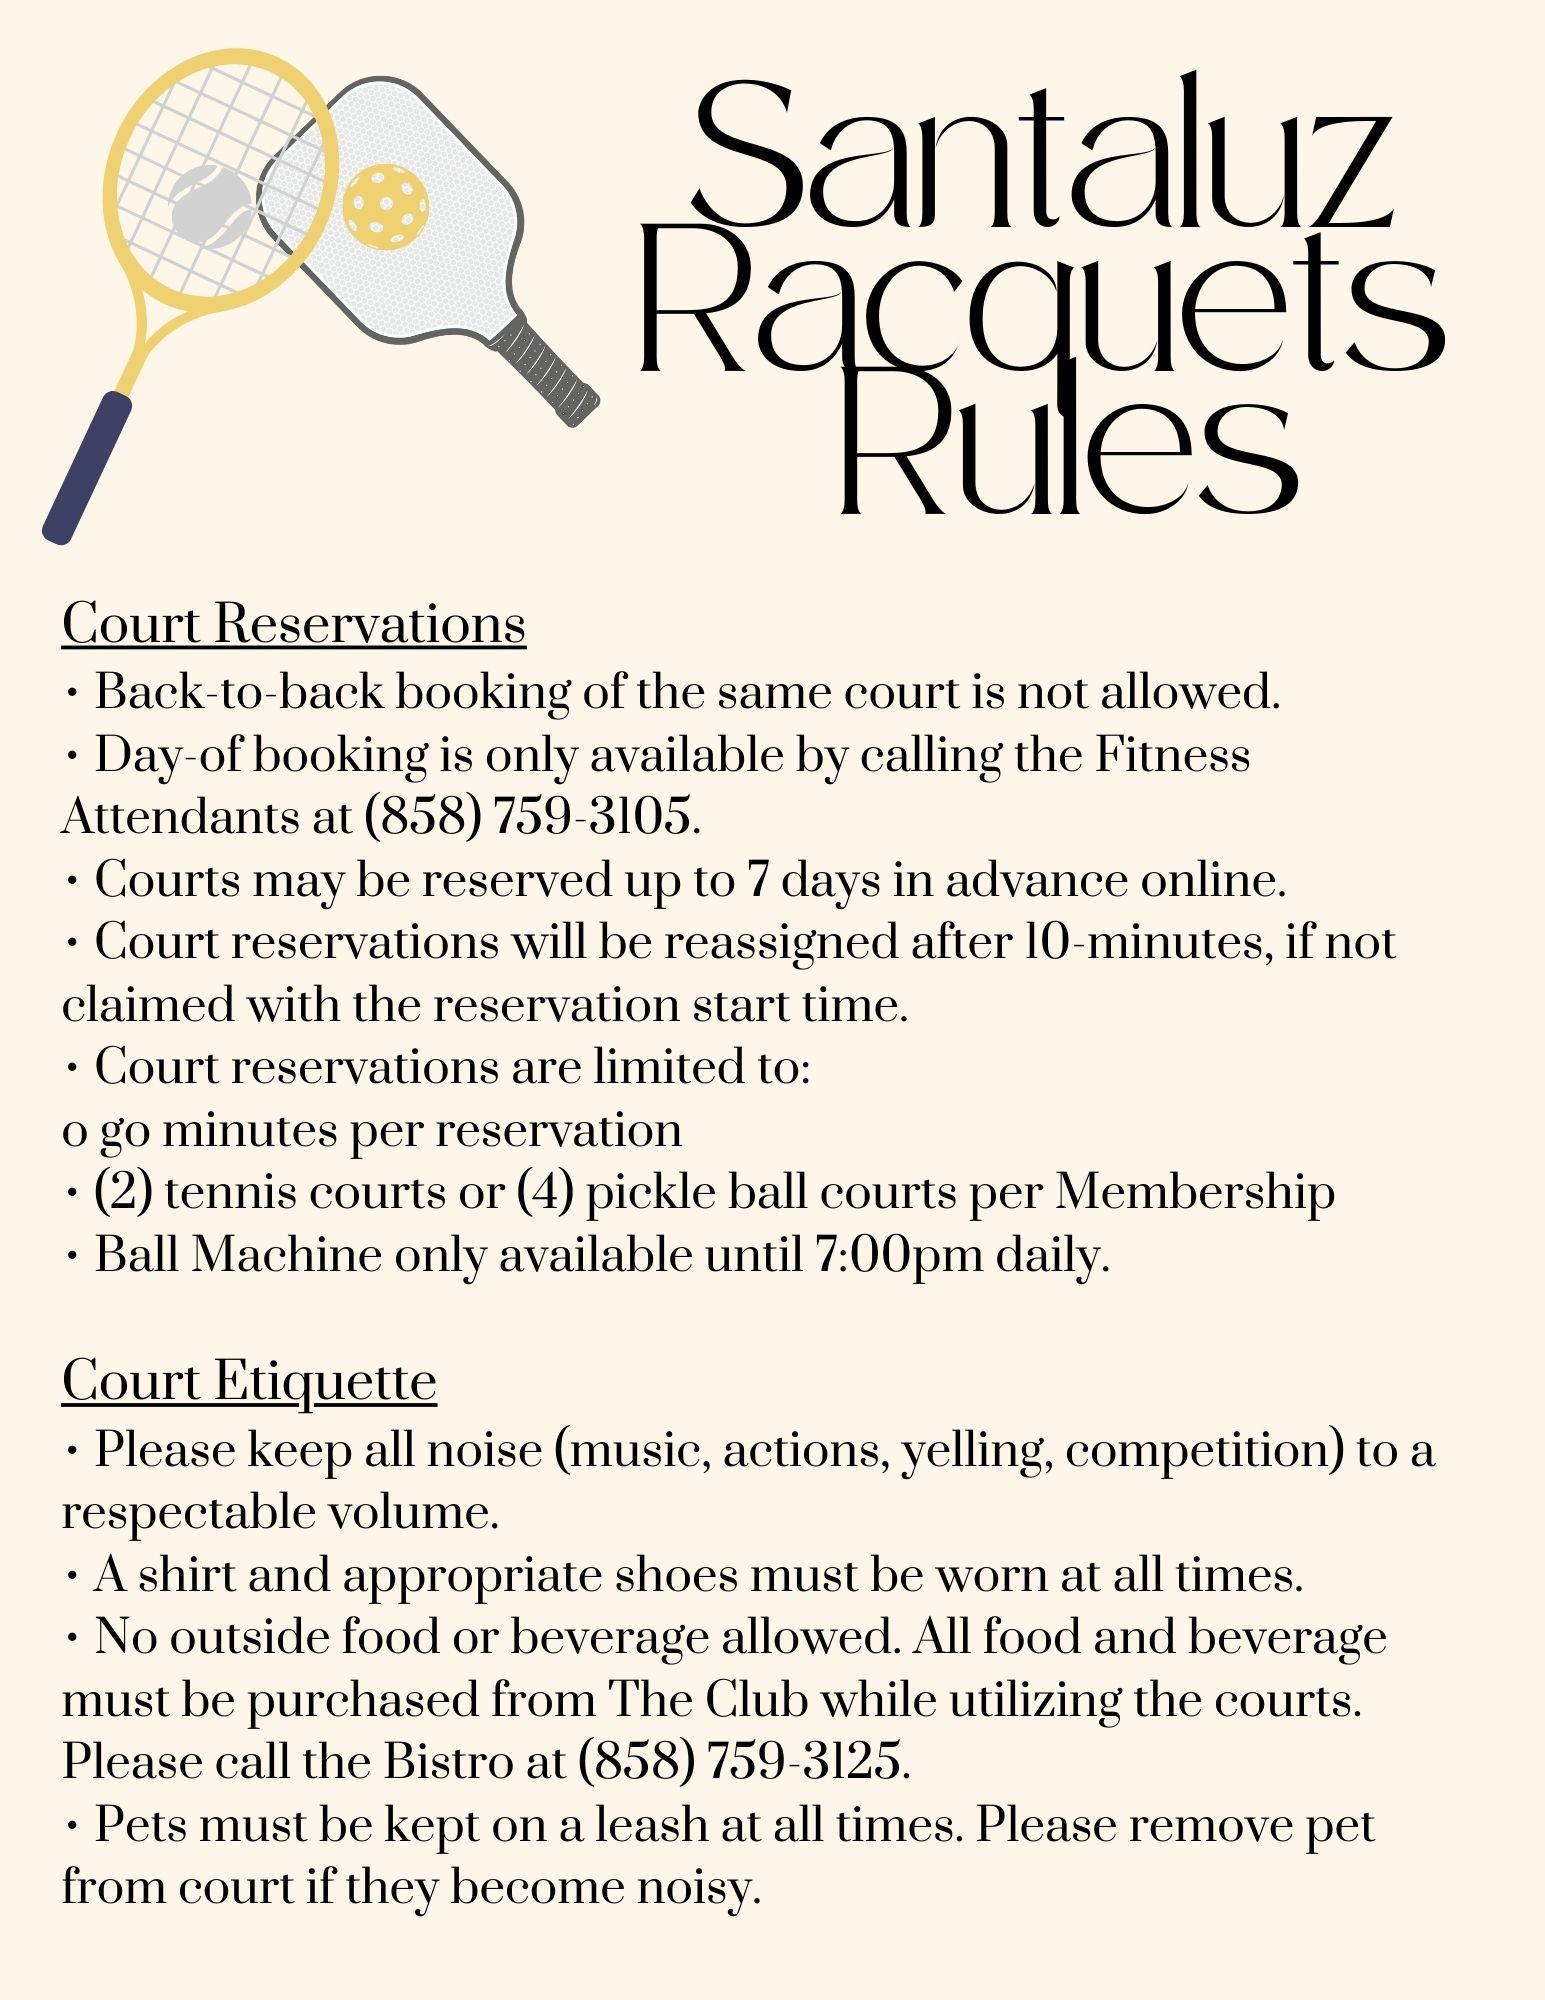 Santaluz_Racquets_Rules